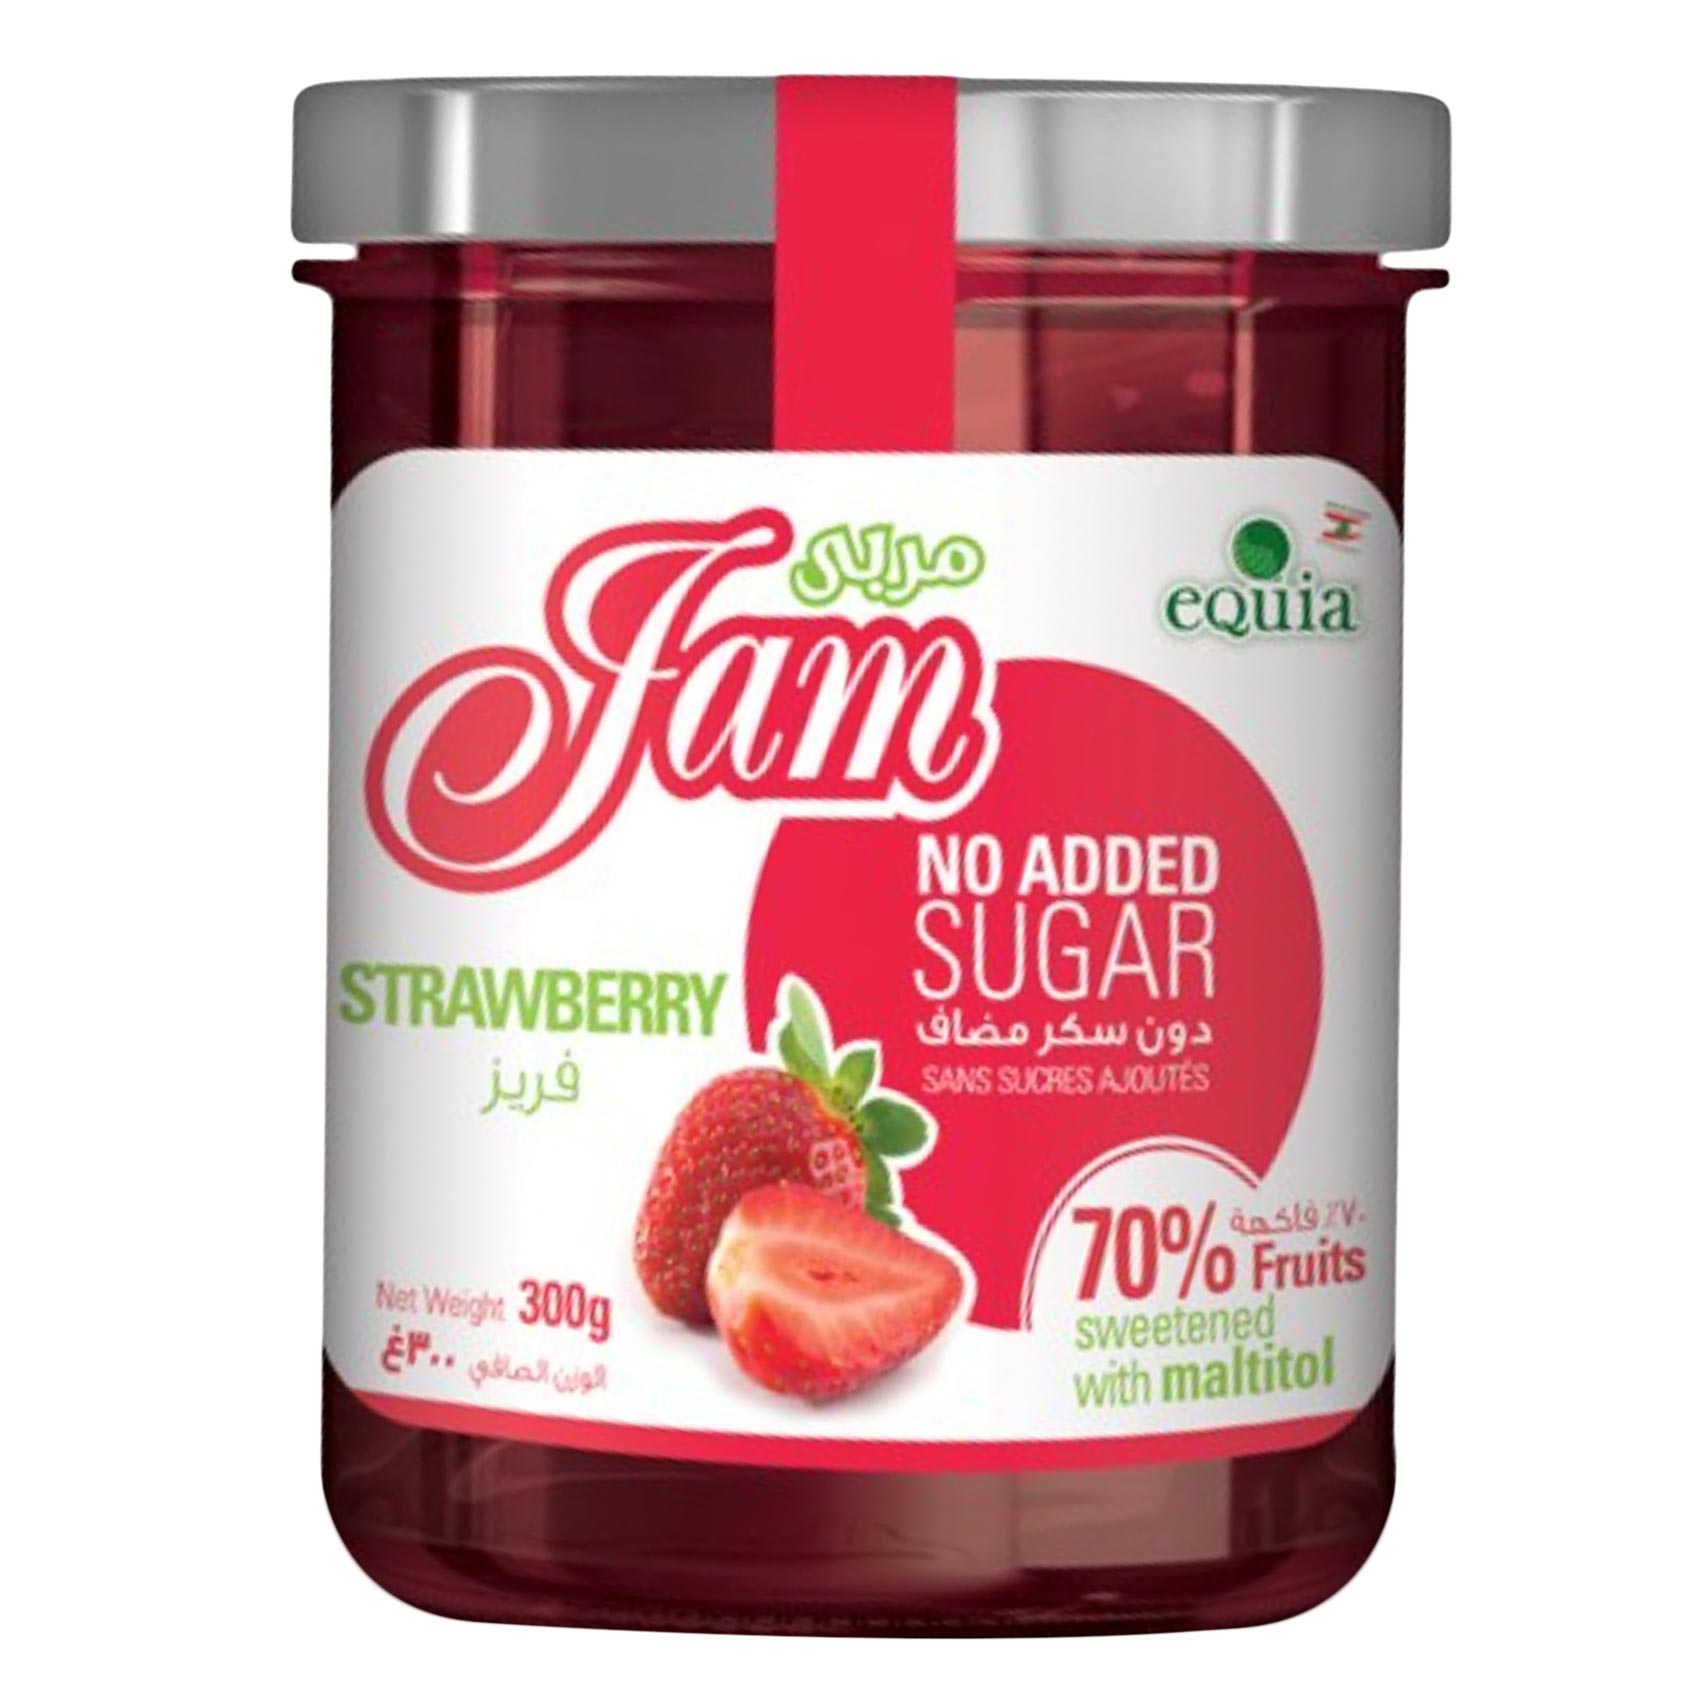 Equia Sugar Free Strawberry Jam 300g